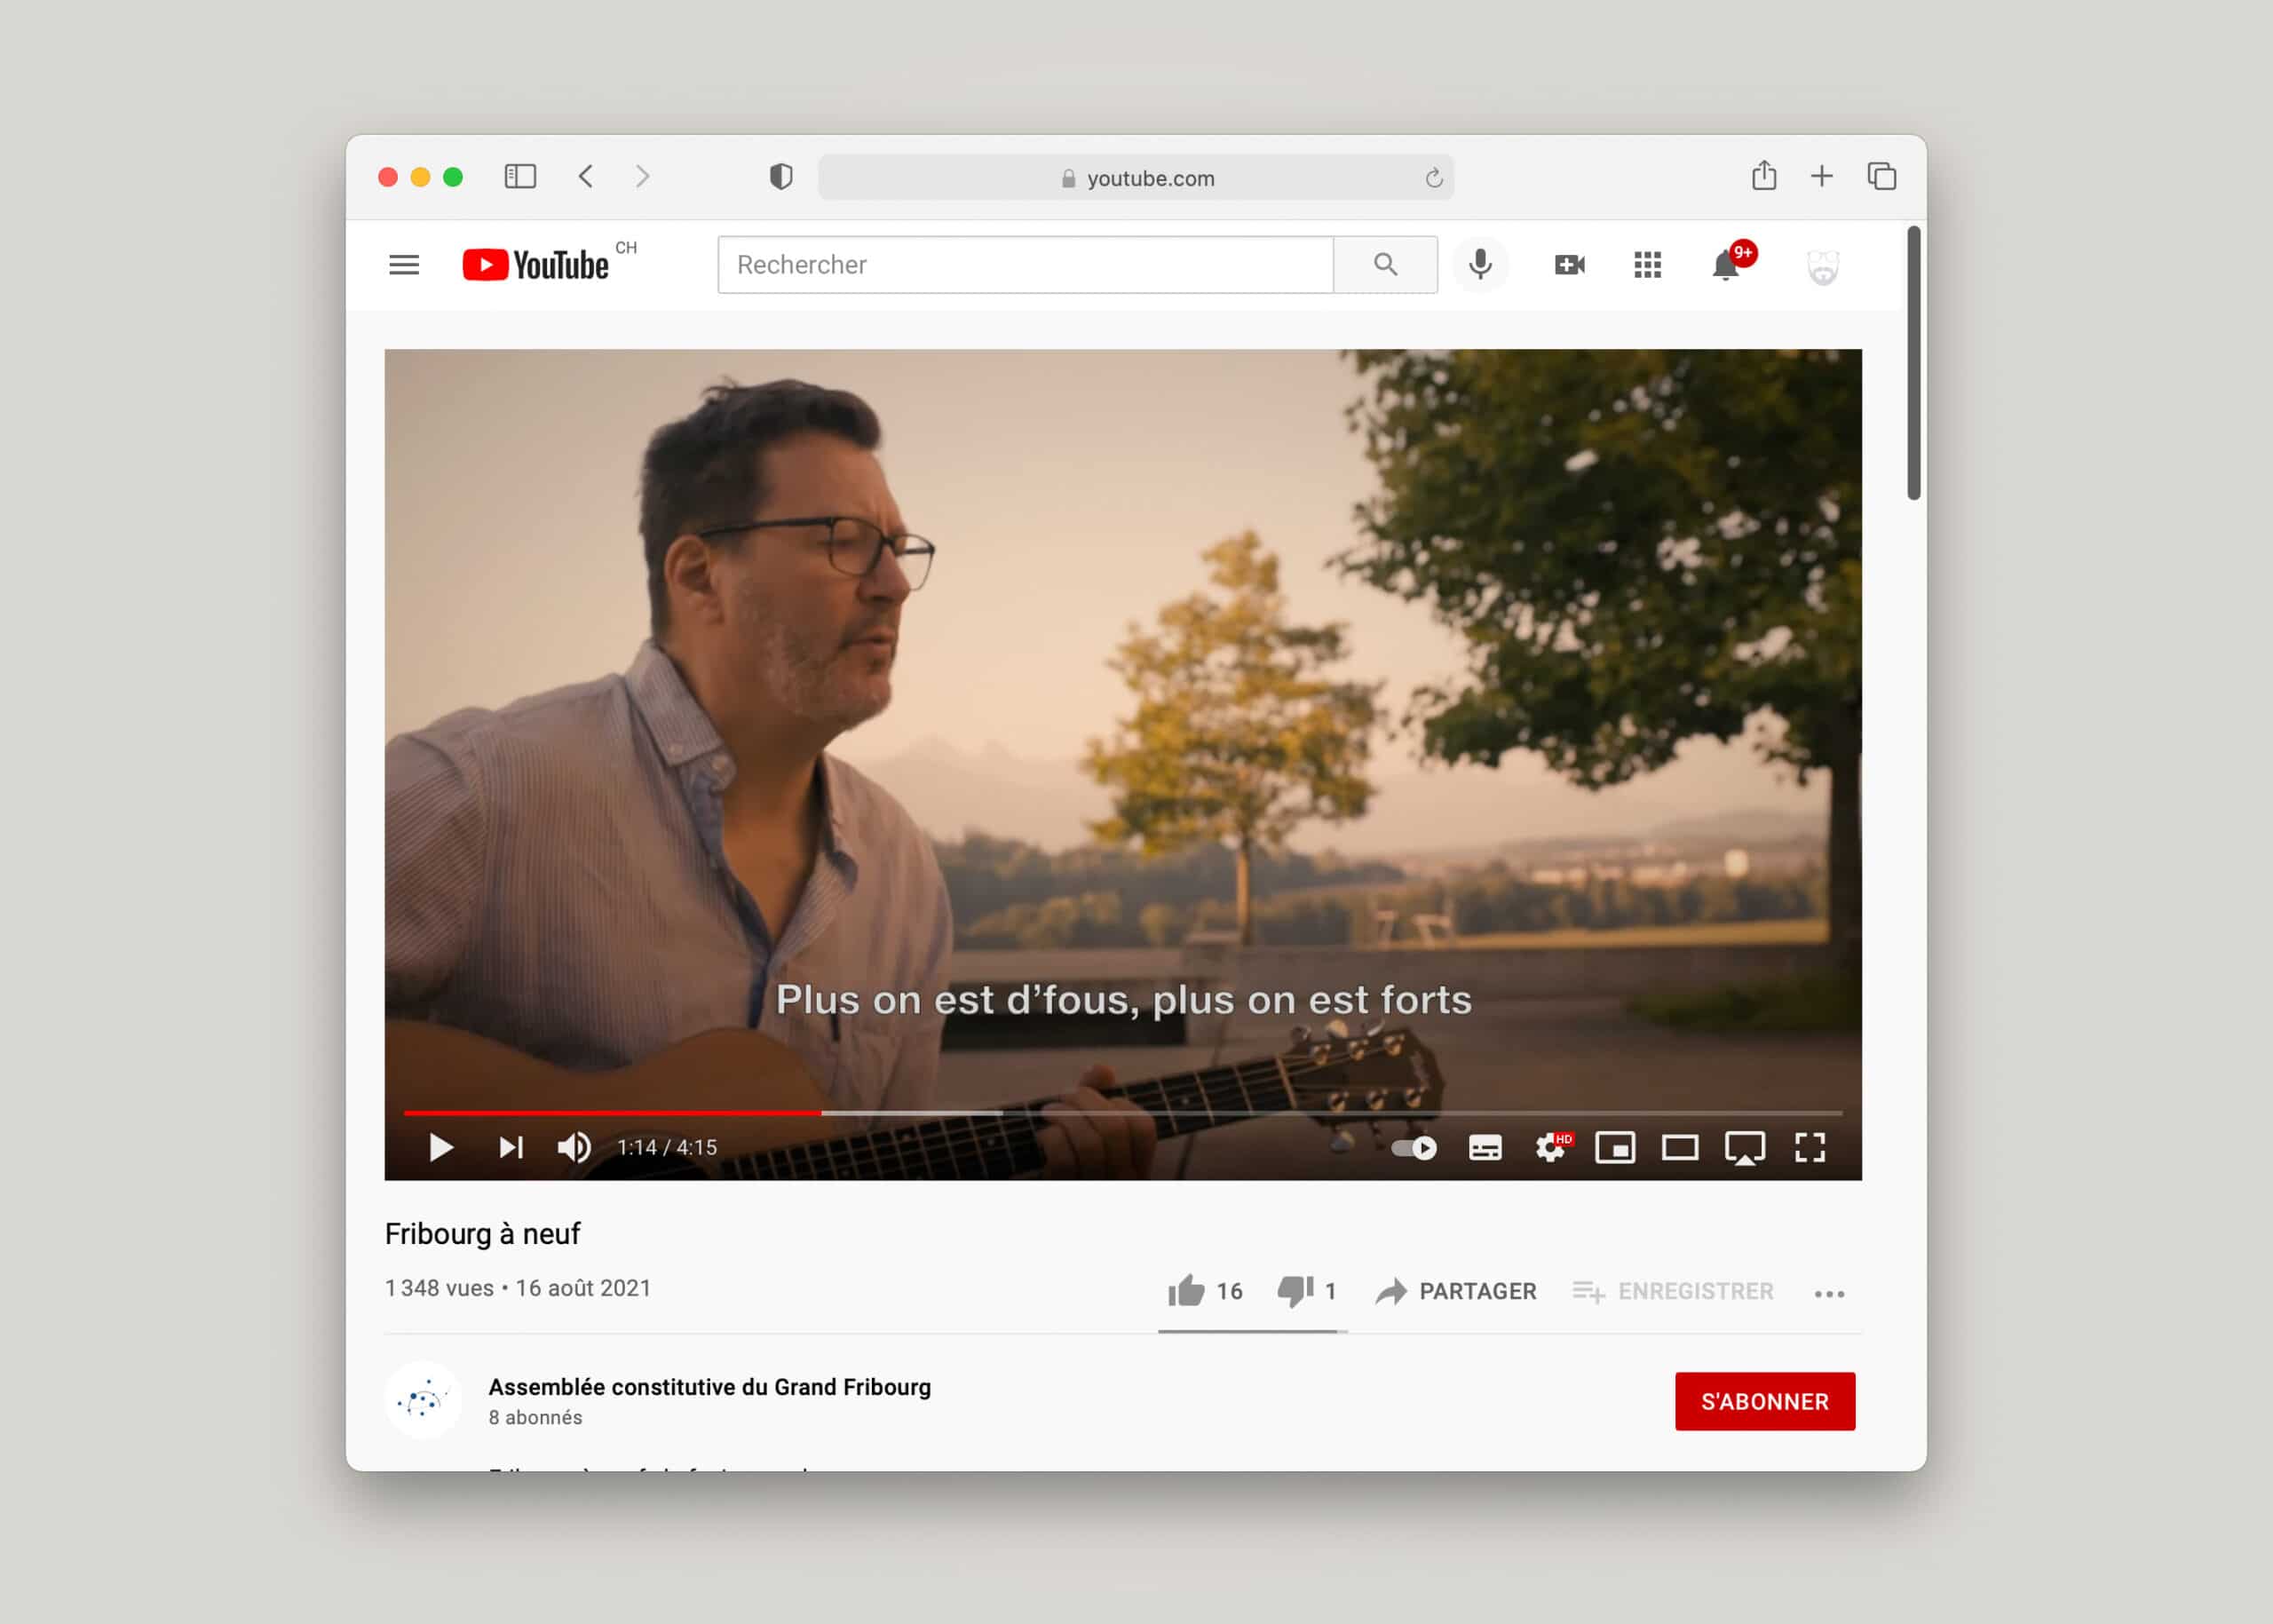 Fenêtre YouTube avec la vidéo musicale de promotion de la fusion du Grand Fribourg.